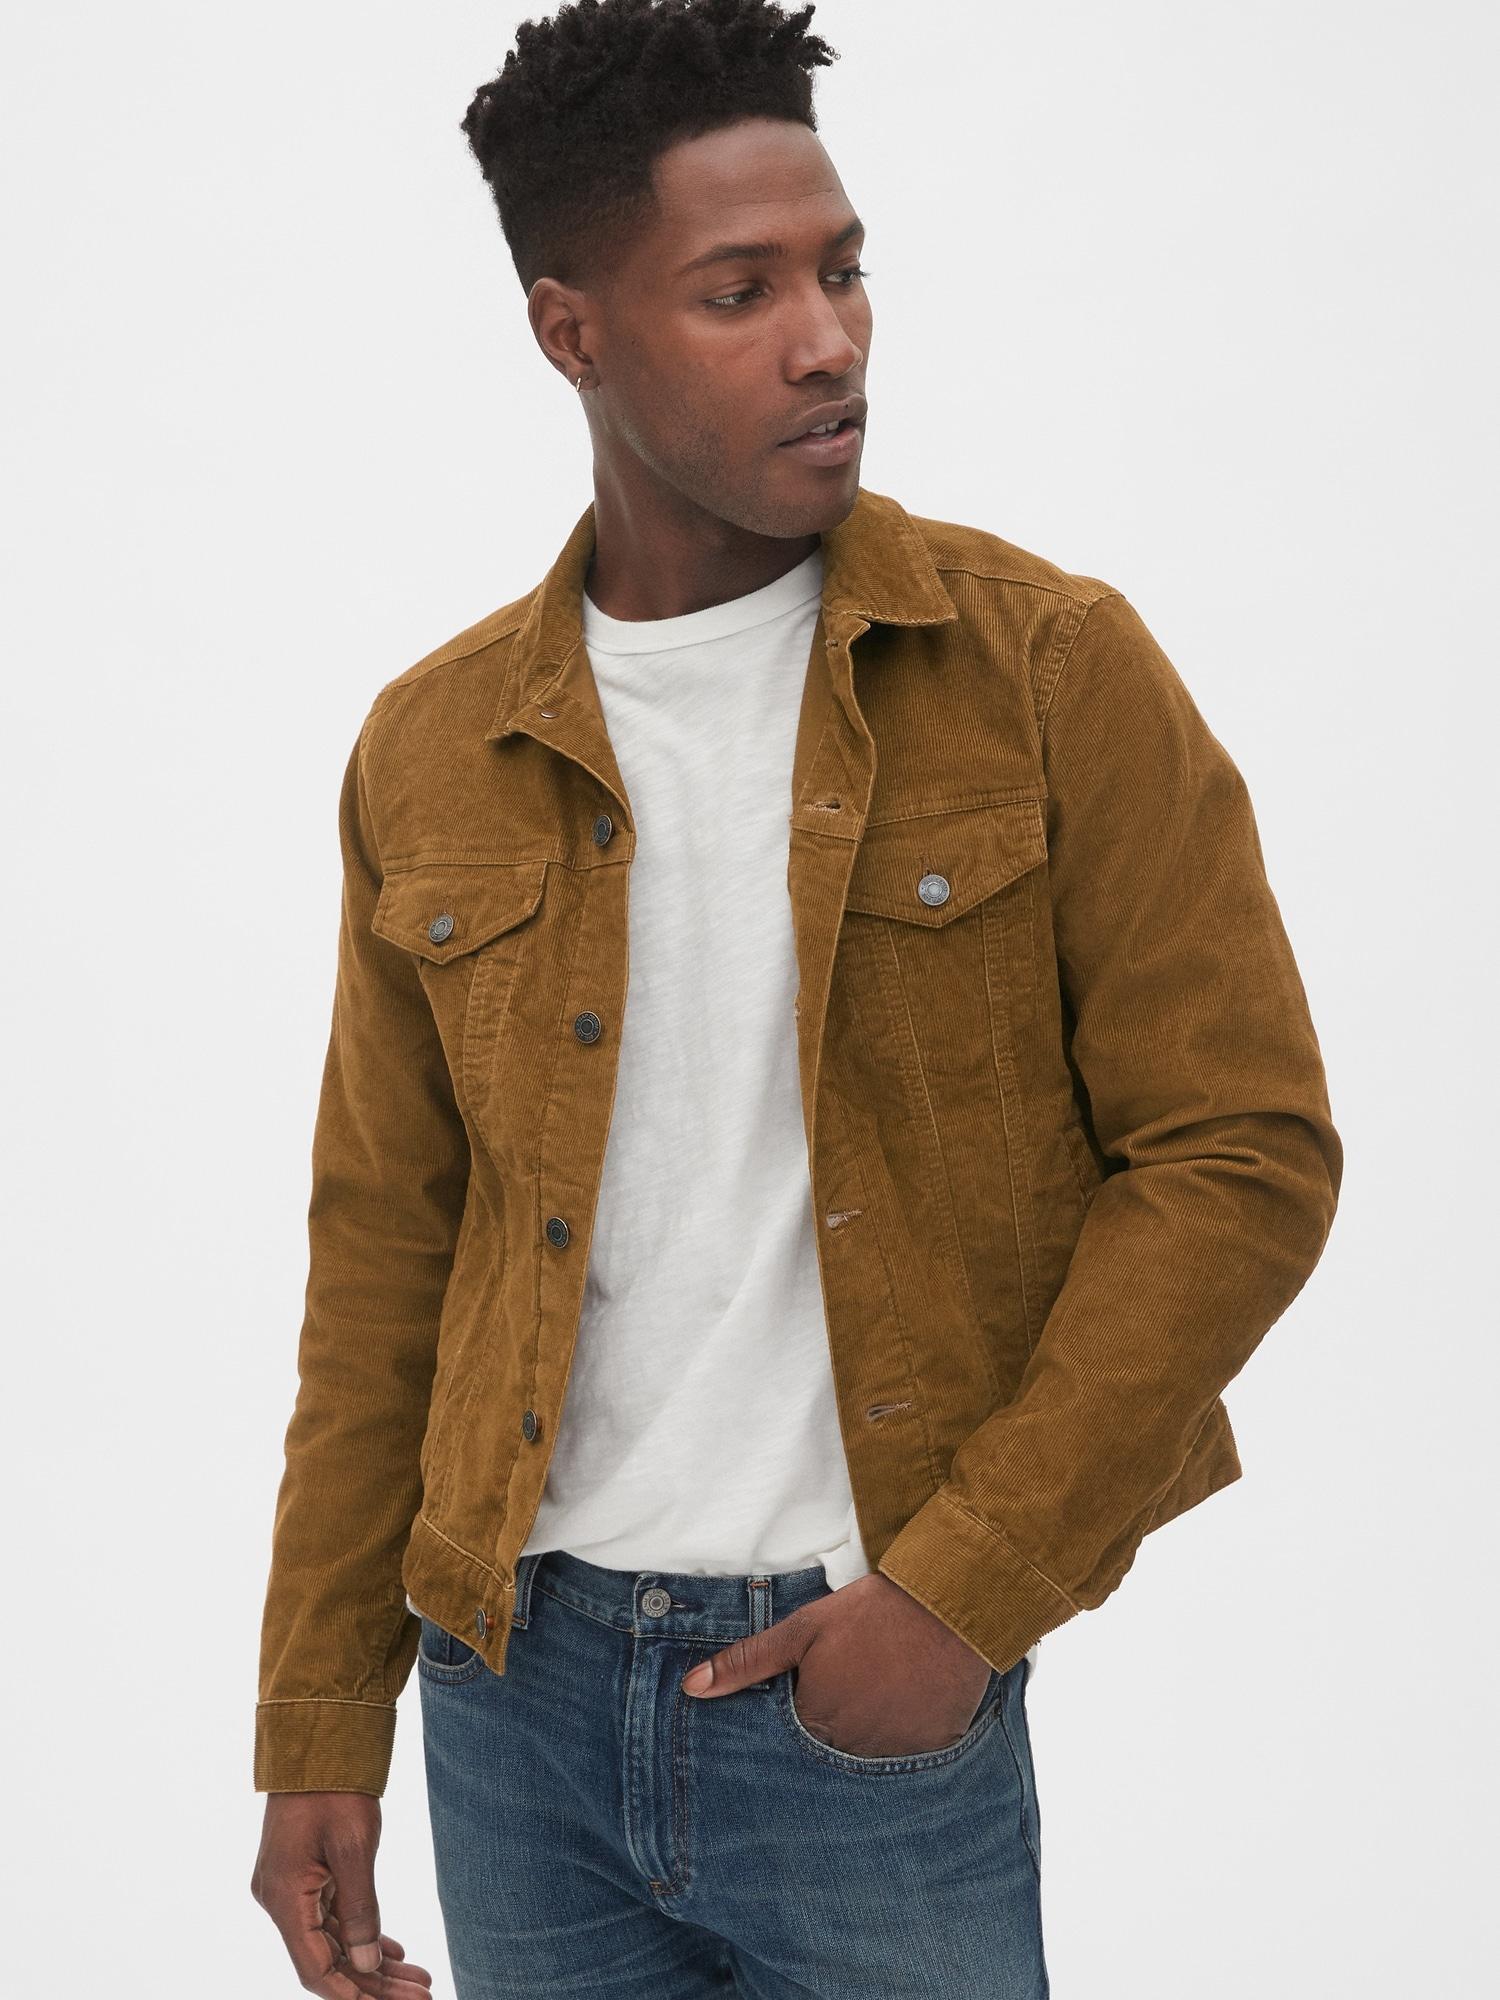 gap brown jacket